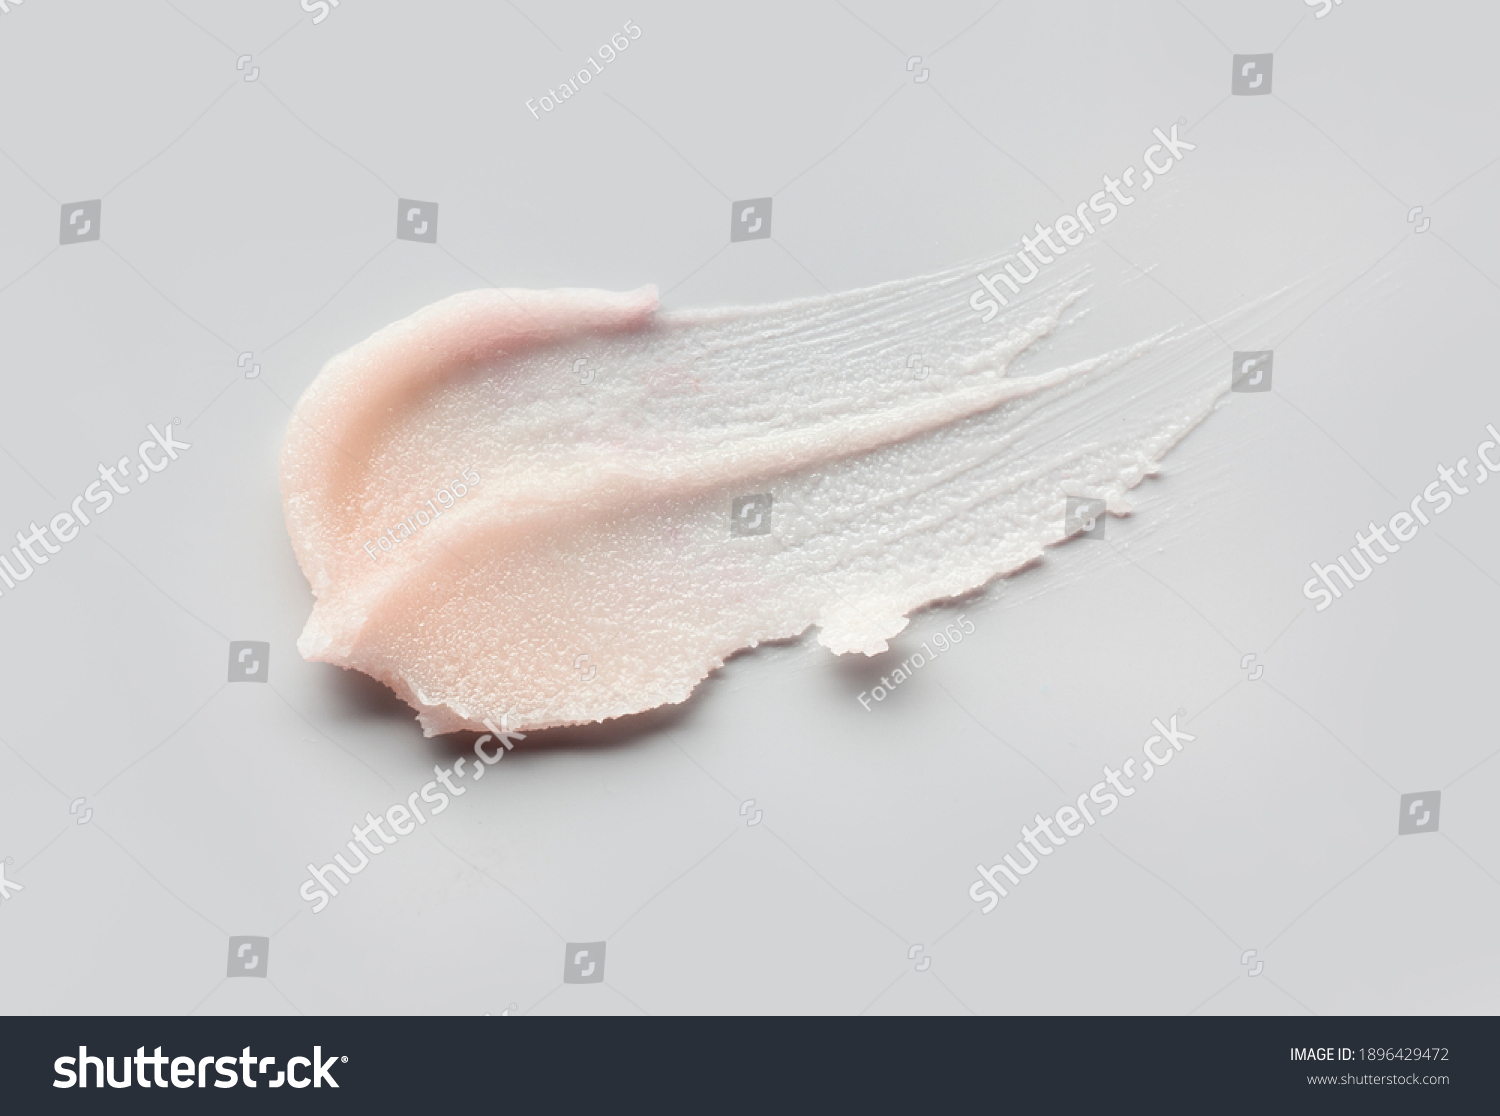 Cosmetic lip balm, salt or sugar scrub swatch on gray background #1896429472